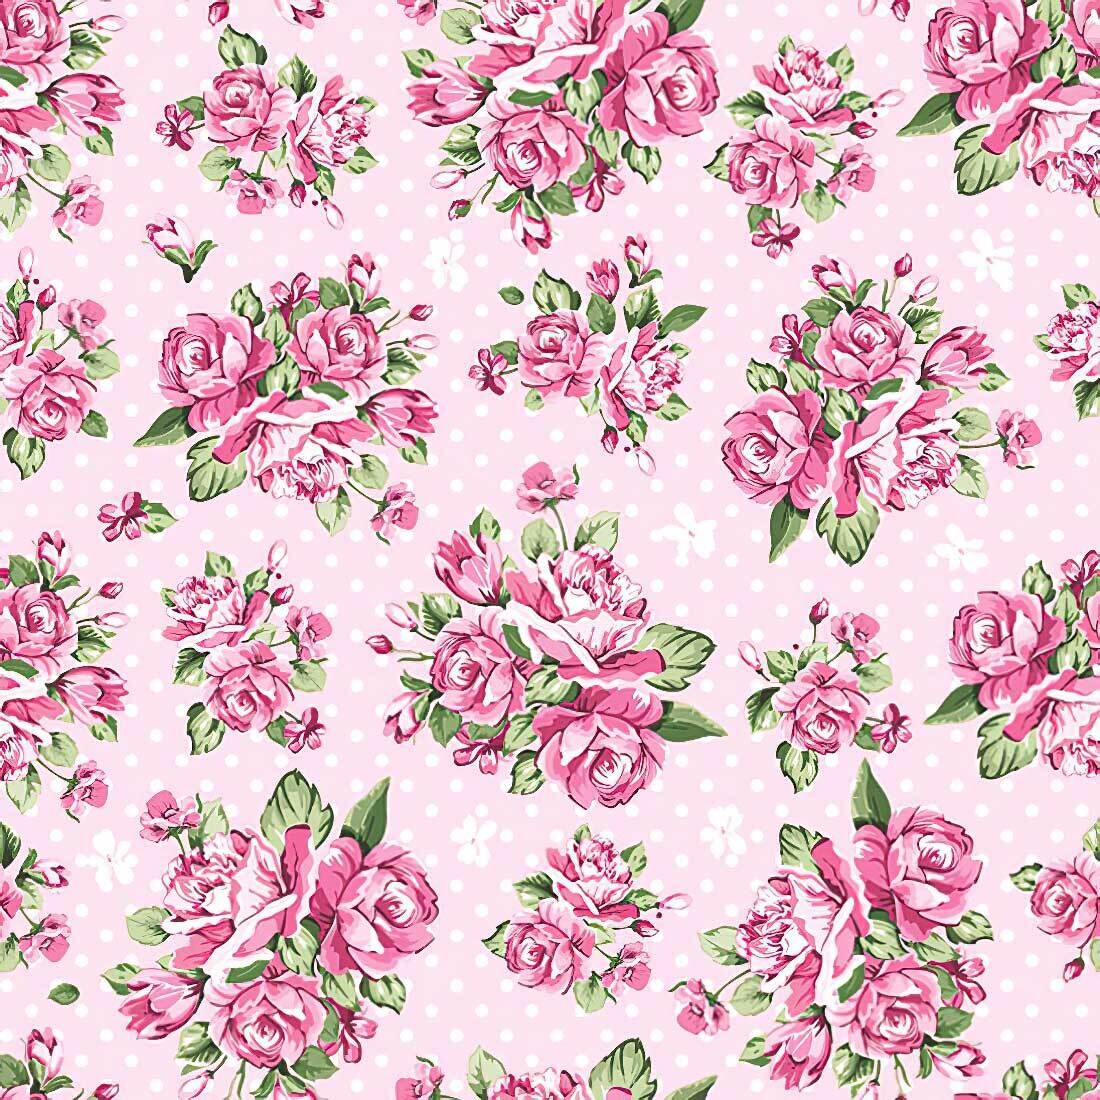 Decoupage Paper Napkins - Floral - Rose on Light Pink Background (1 Sheet)